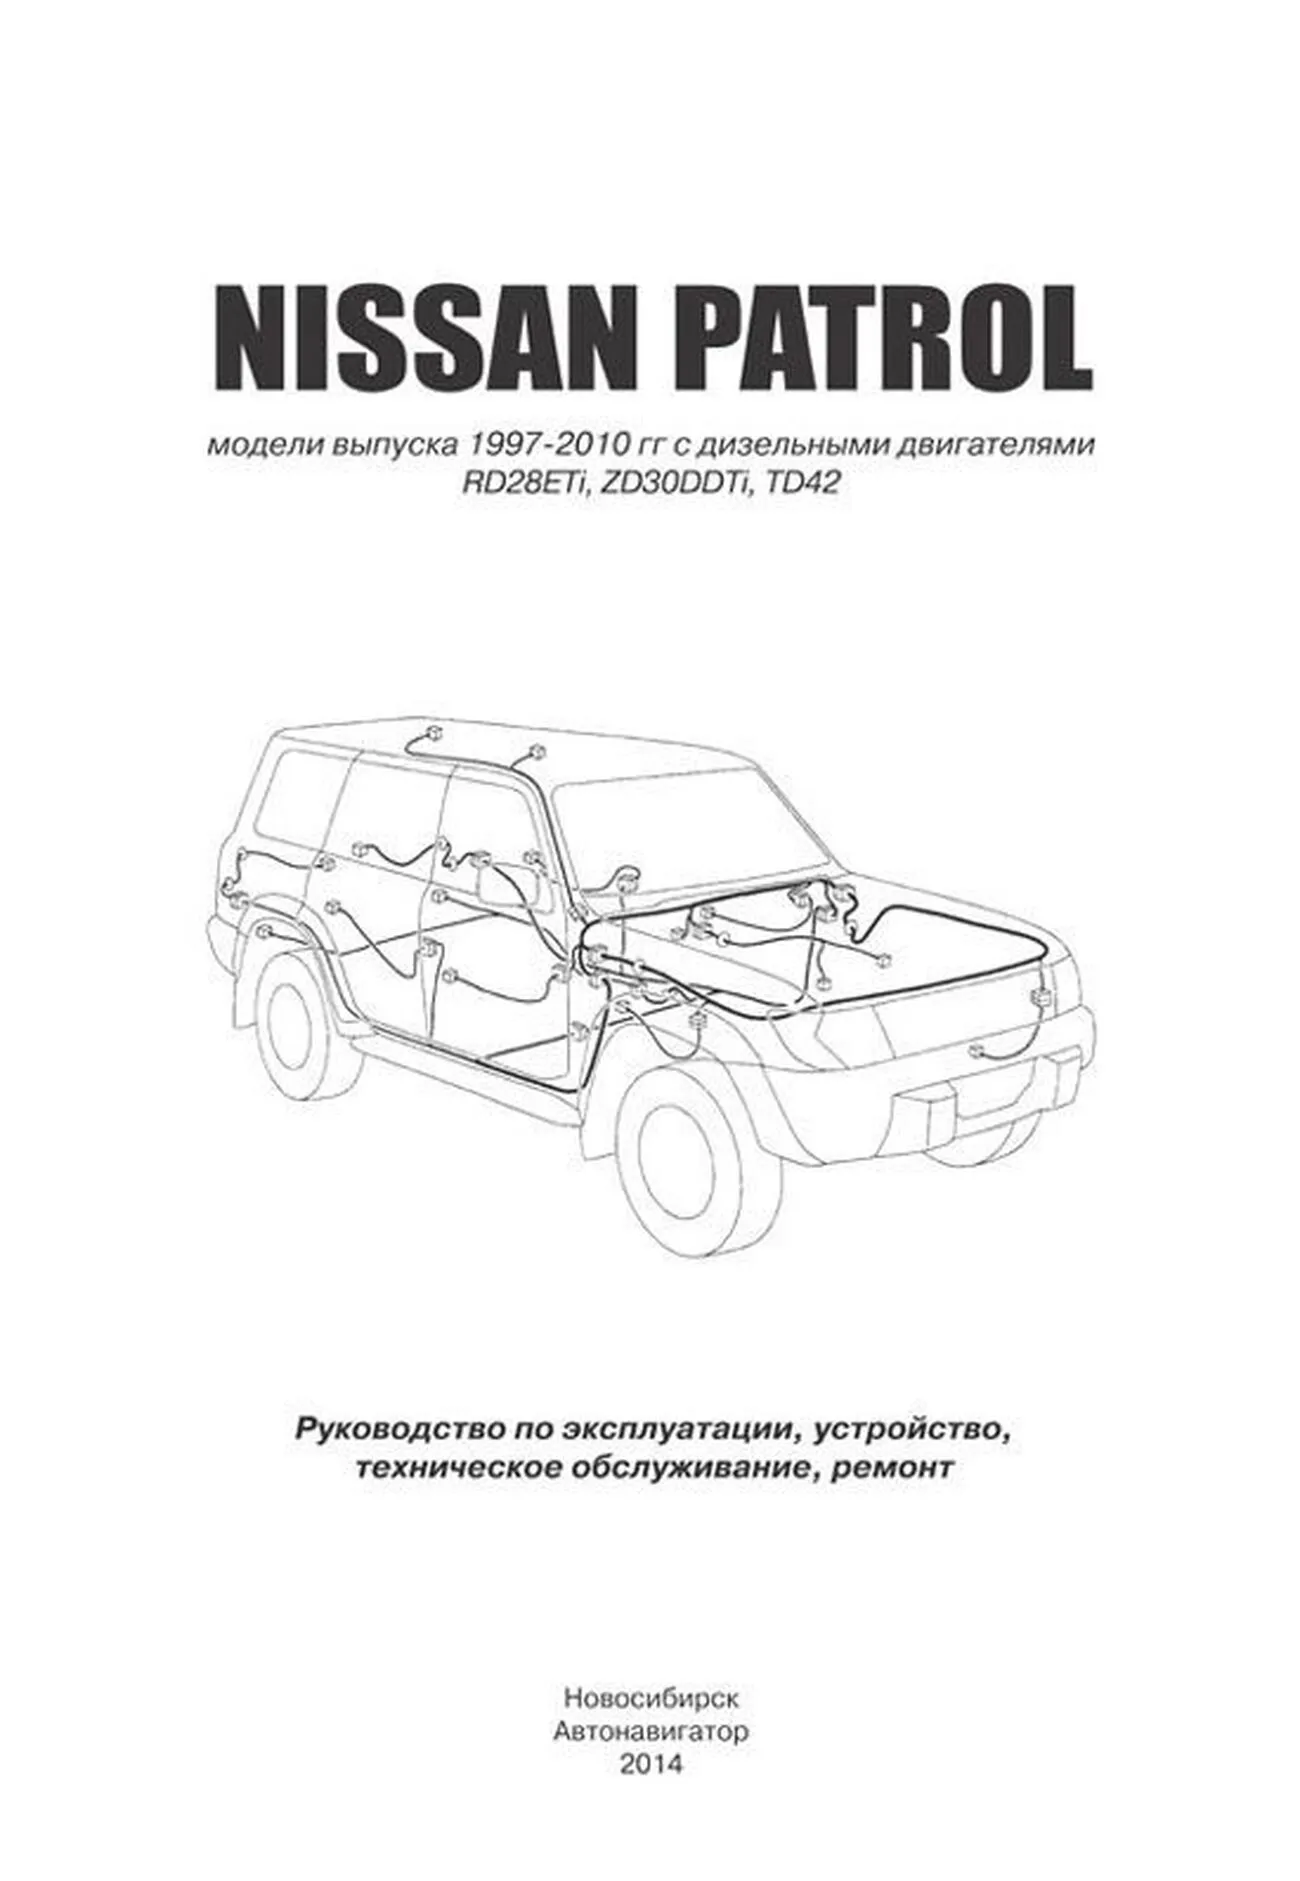 Книга: NISSAN PATROL Y61 (д) 1997-2010 г.в., рем., экспл., то | Автонавигатор